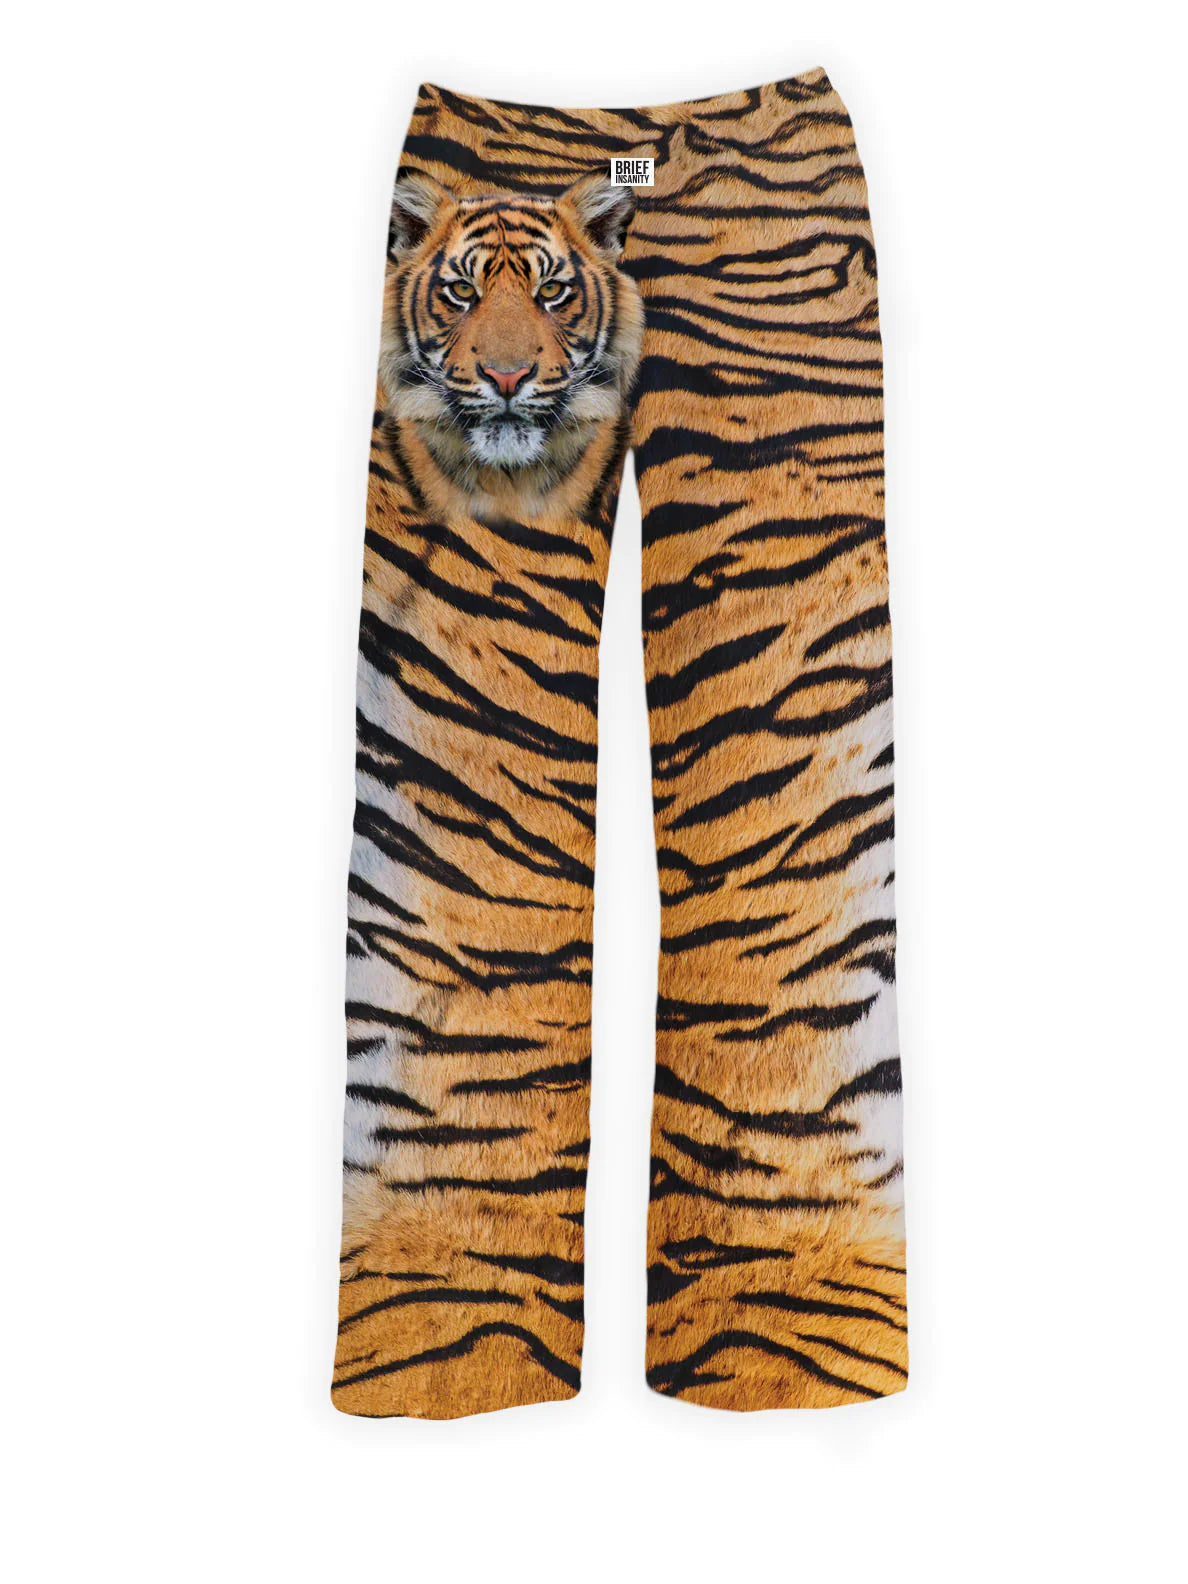 Tiger Lounge Pant